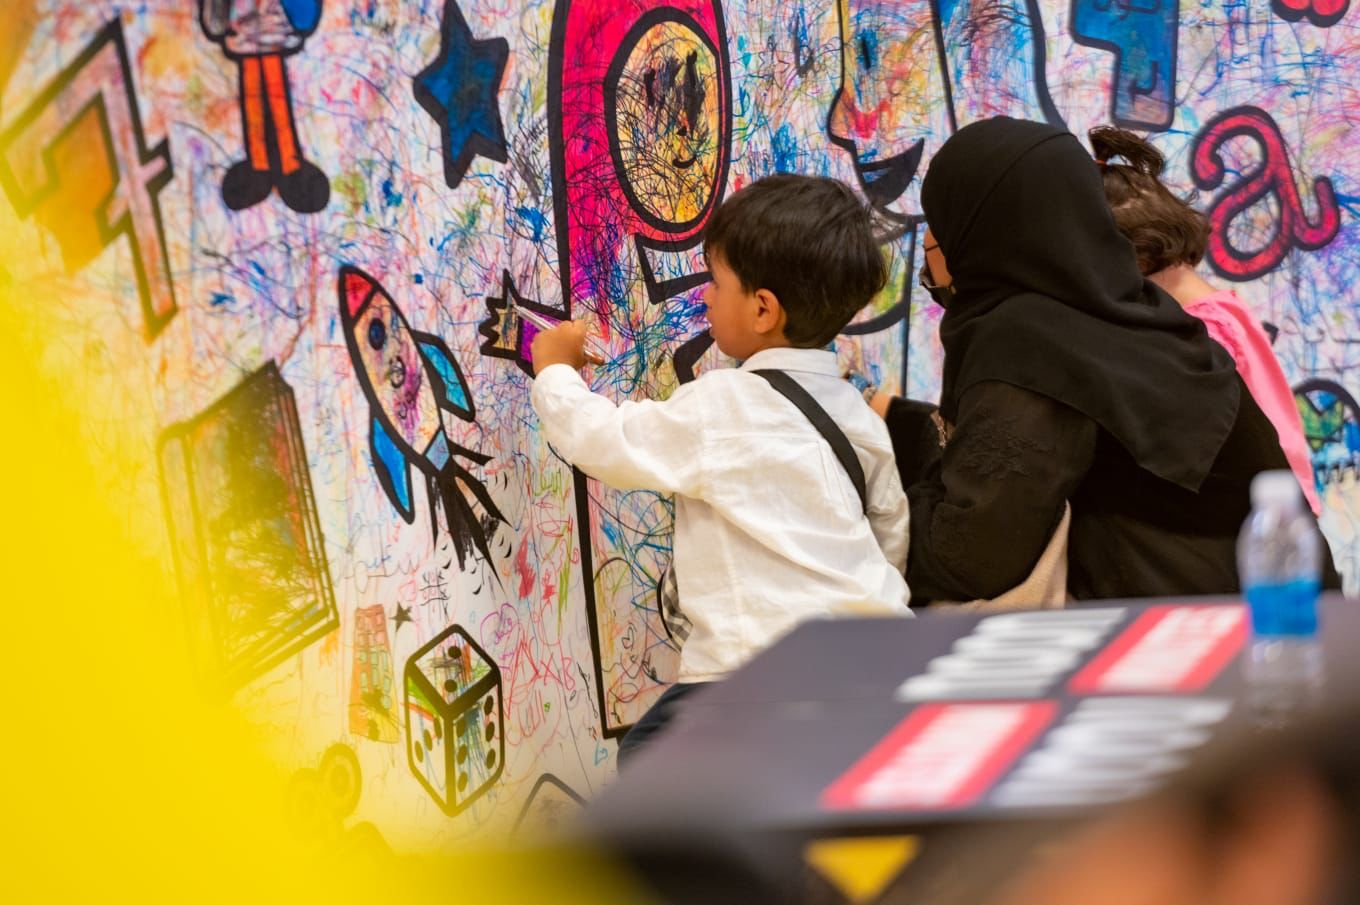 مهرجان العودة إلى الرياض يتيح للأطفال التواصل مع الفنون التشكيلية وتأملها